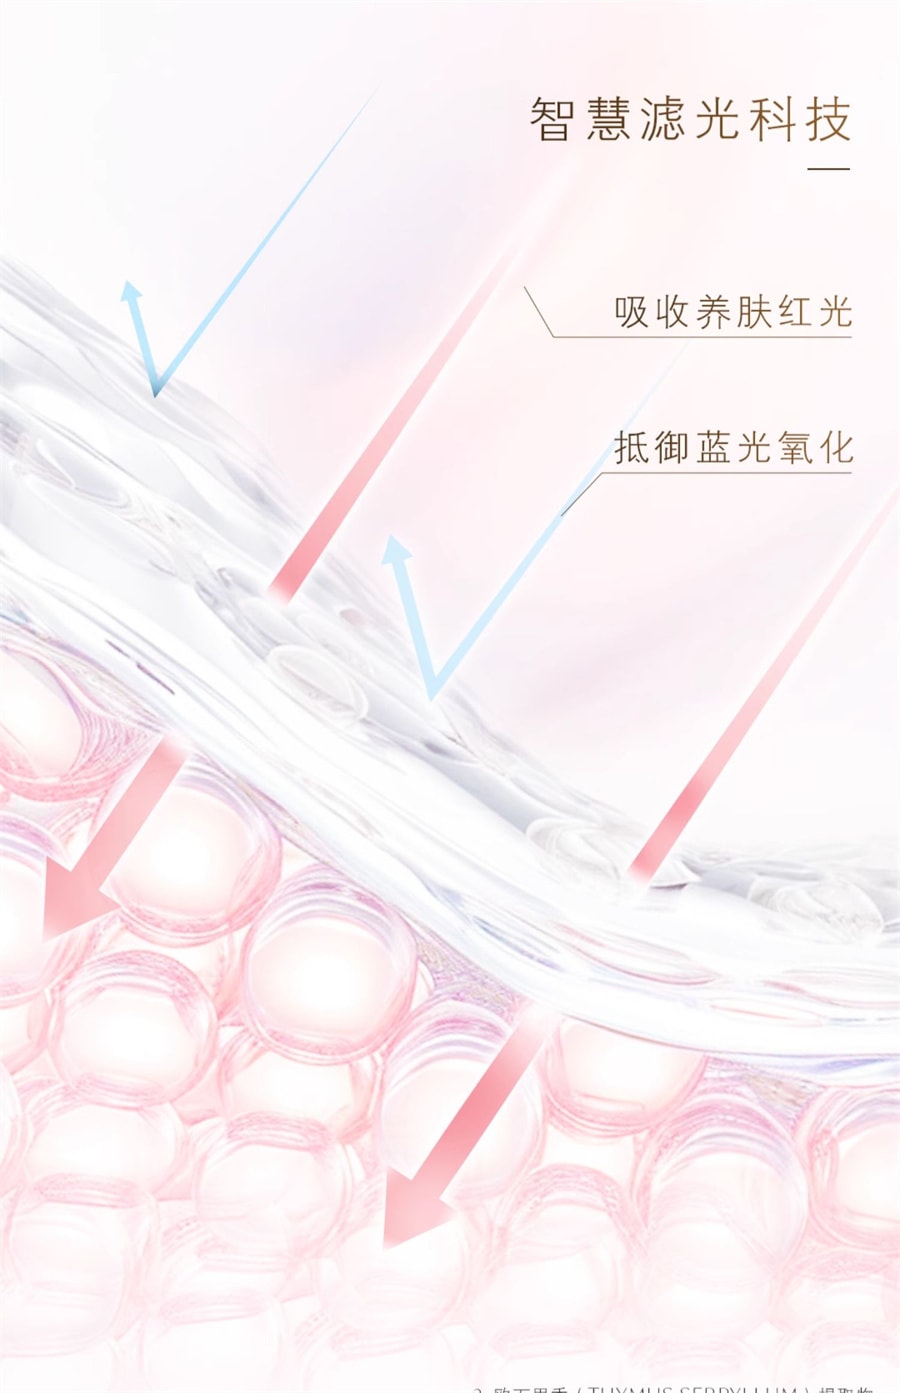 【日本直郵】CLE DE PEAU BEAUTE CPB 肌膚之鑰日本版 新版防曬 禦齡高倍防曬乳 SPF50+ PA++++ 50g